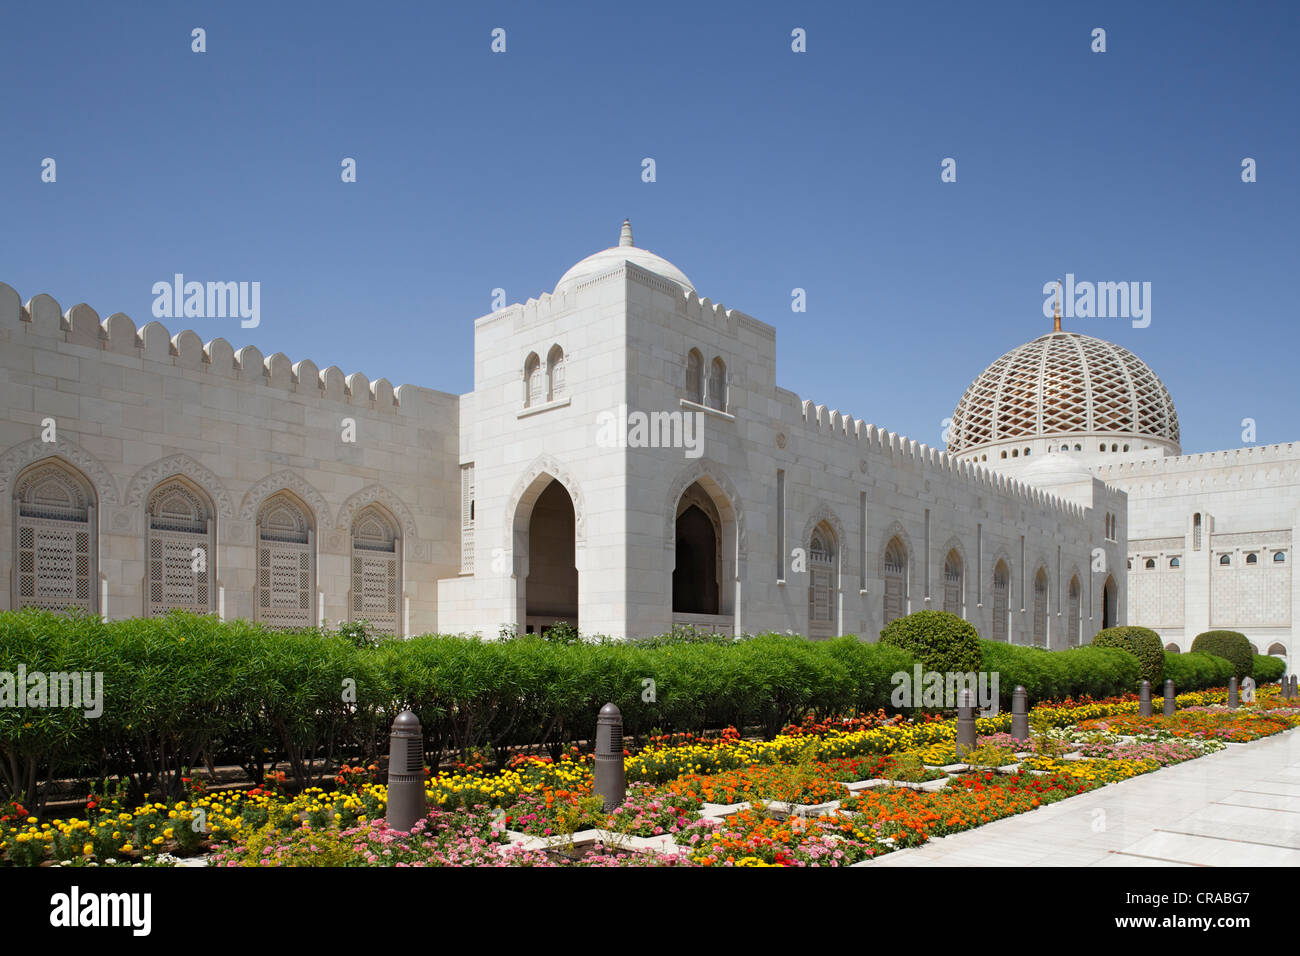 Gran Mezquita Sultan Qaboos y cama de flor, explanada, Muscat capital, Sultanato de Omán, los Estados del Golfo, la Península Árabe Foto de stock